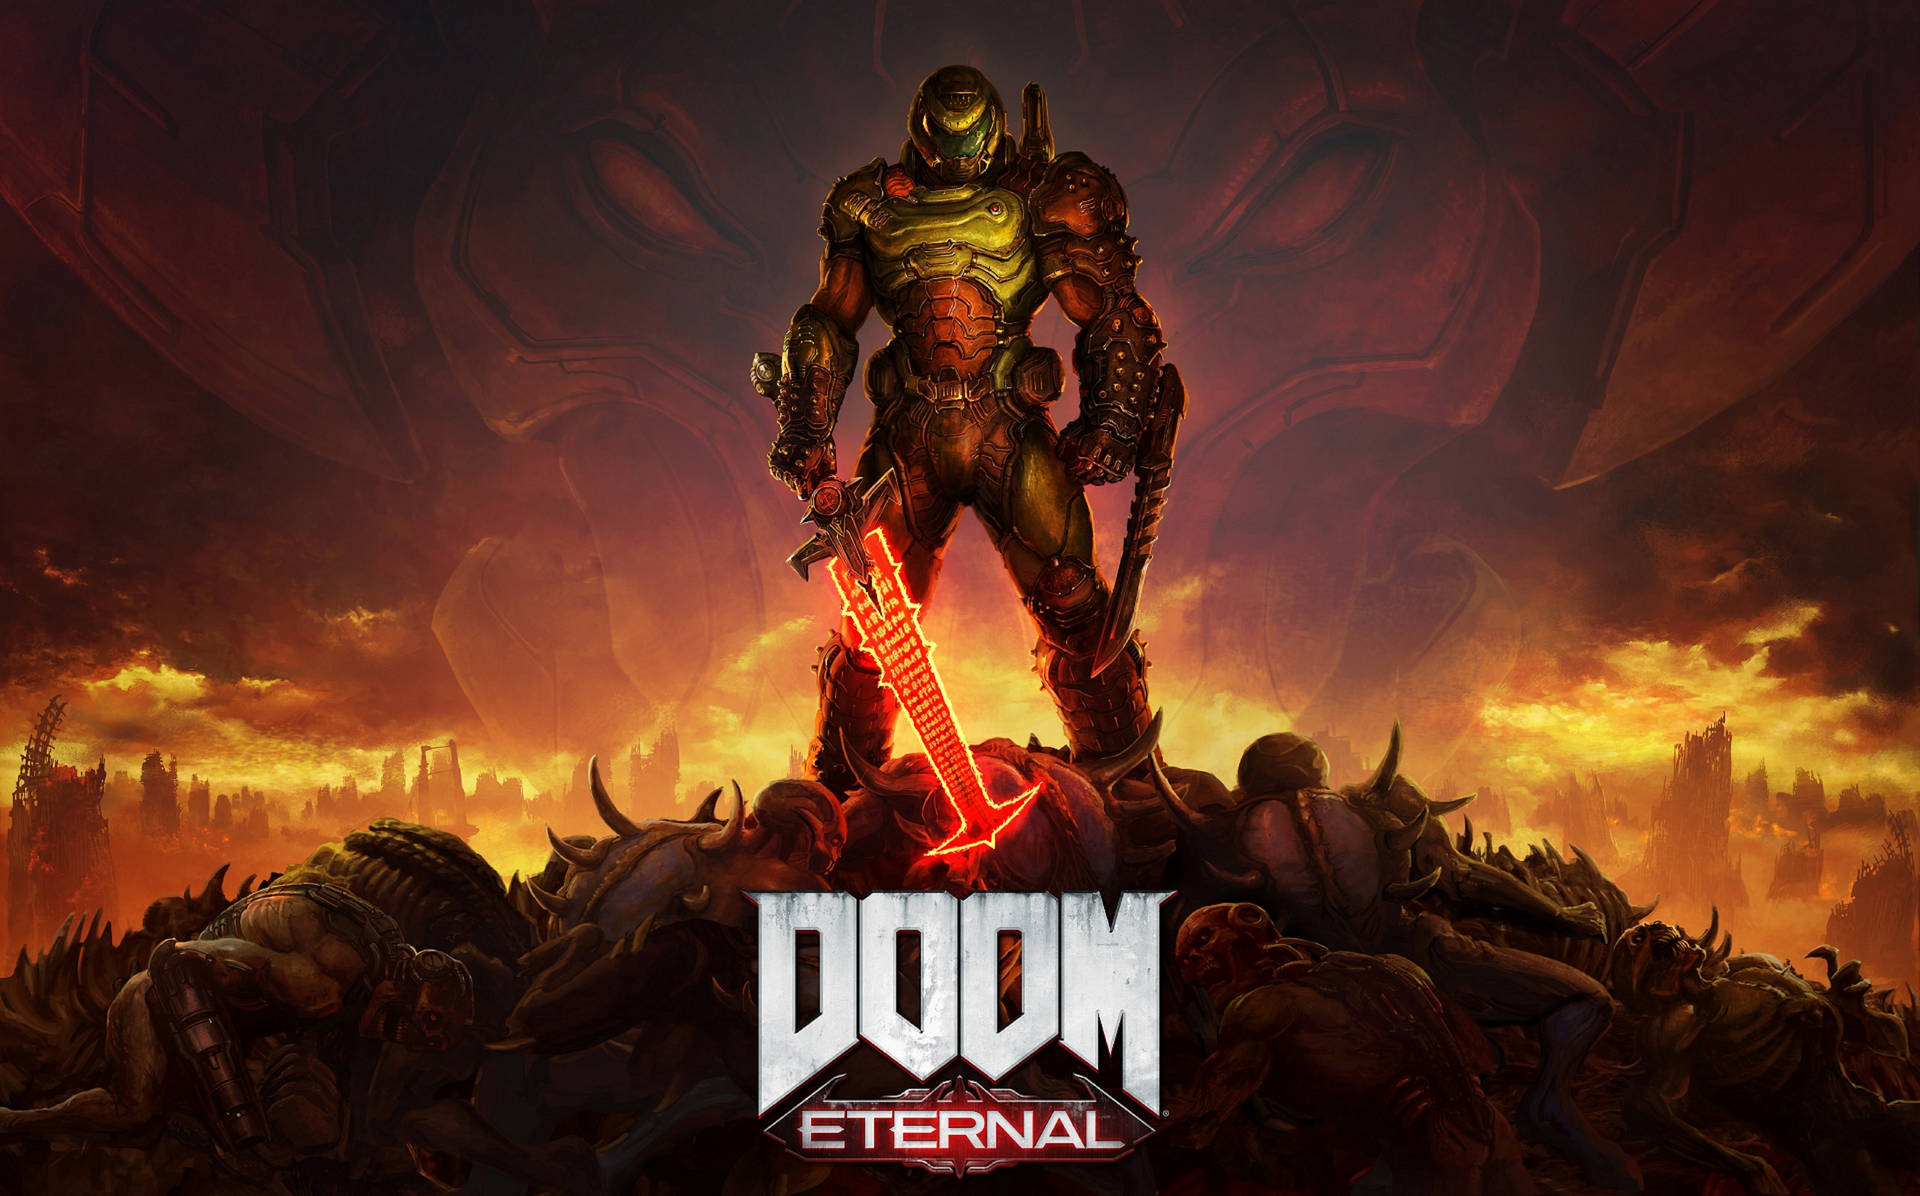 Doomguy Eternal Poster Background